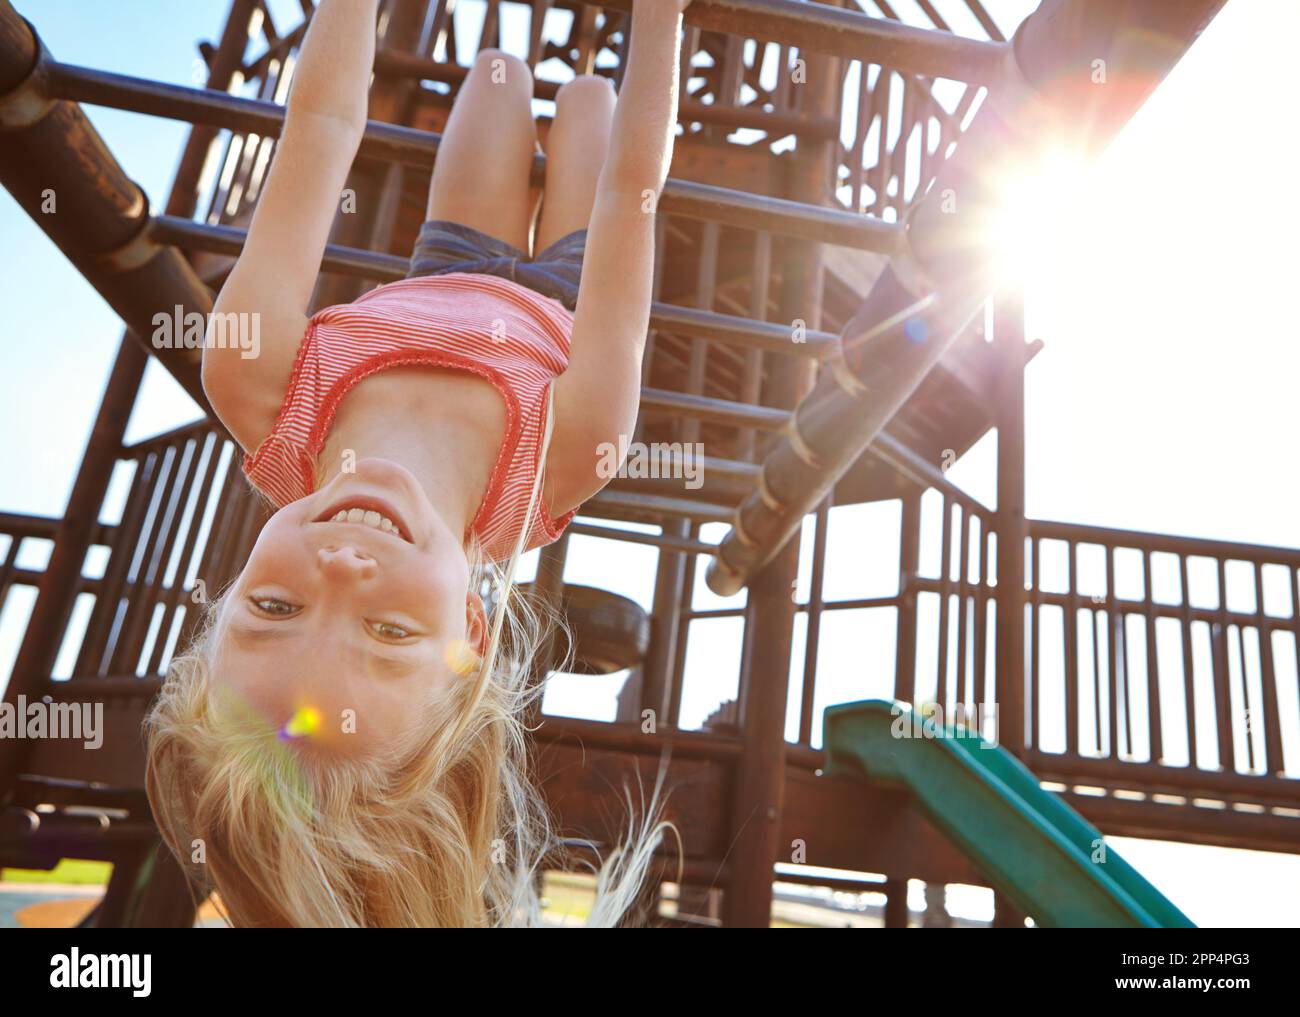 Der Spielplatz ist ihr Lieblingsort. Ein kleines Mädchen, das kopfüber auf dem Spielplatz an Affenbars hing. Stockfoto